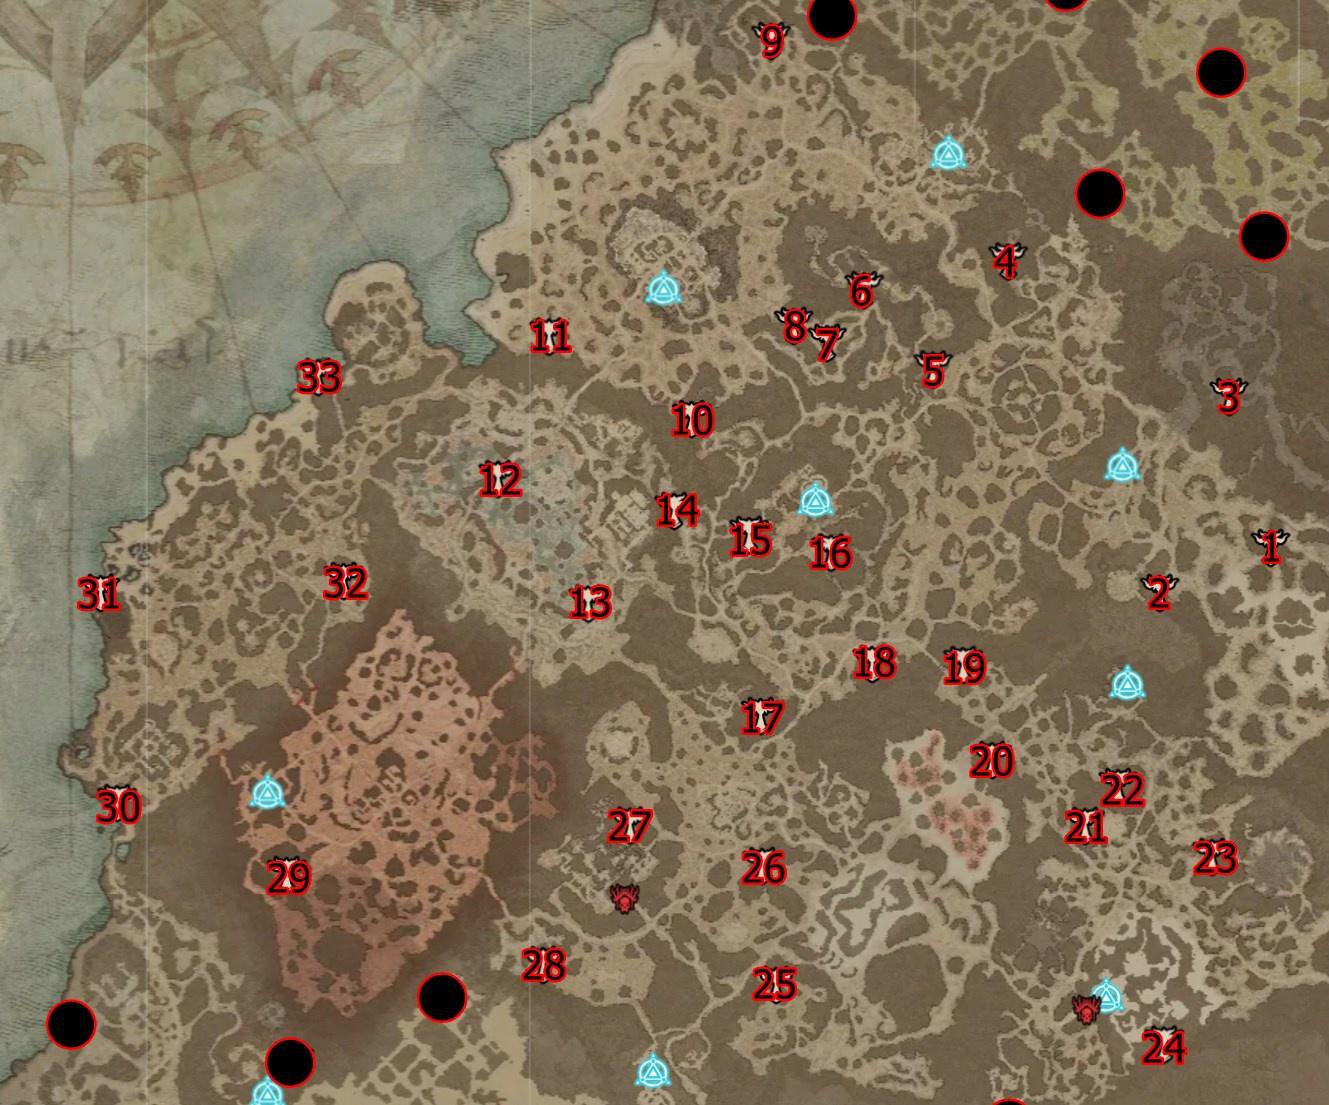 Diablo 4: де знайти всі вівтарі Ліліт? Карта з точним розташуванням